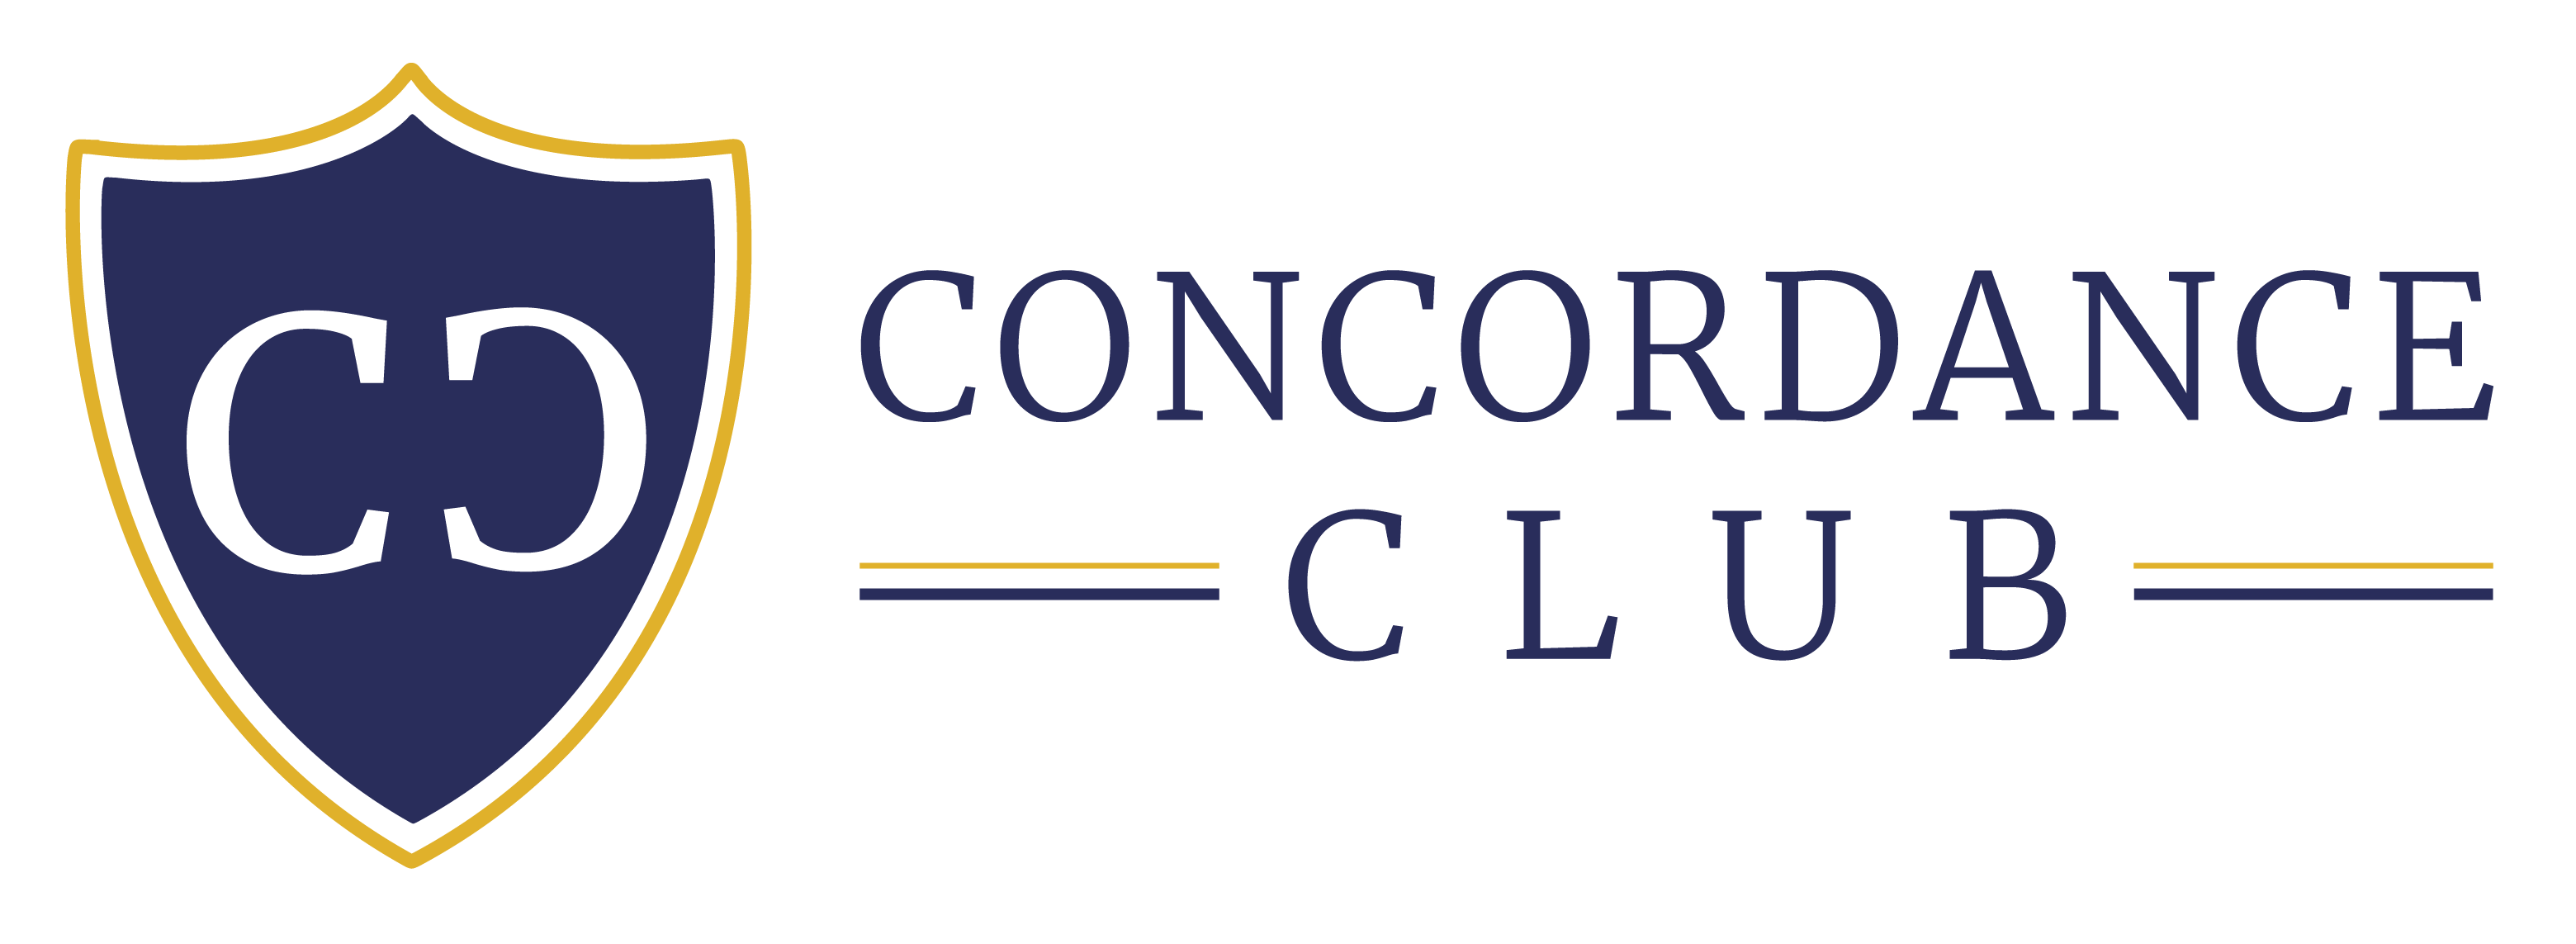 concordance club logo